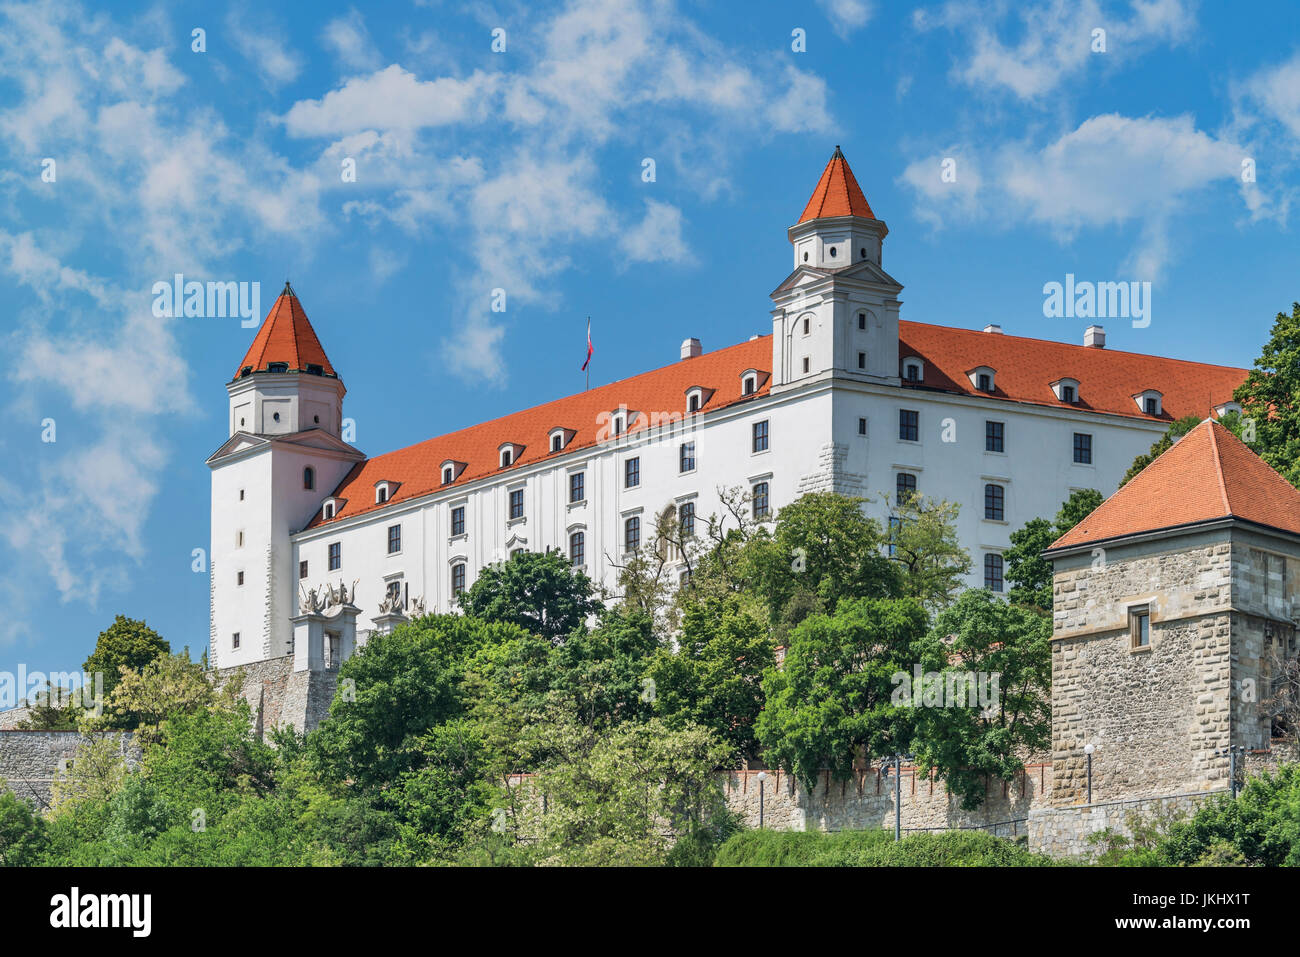 Burg Bratislava Befindet Sich in Bratislava, der Hauptstadt der Slowakei in Europa sterben | Die Burg von Bratislava befindet sich in Bratislava, der Hauptstadt des Sl Stockfoto